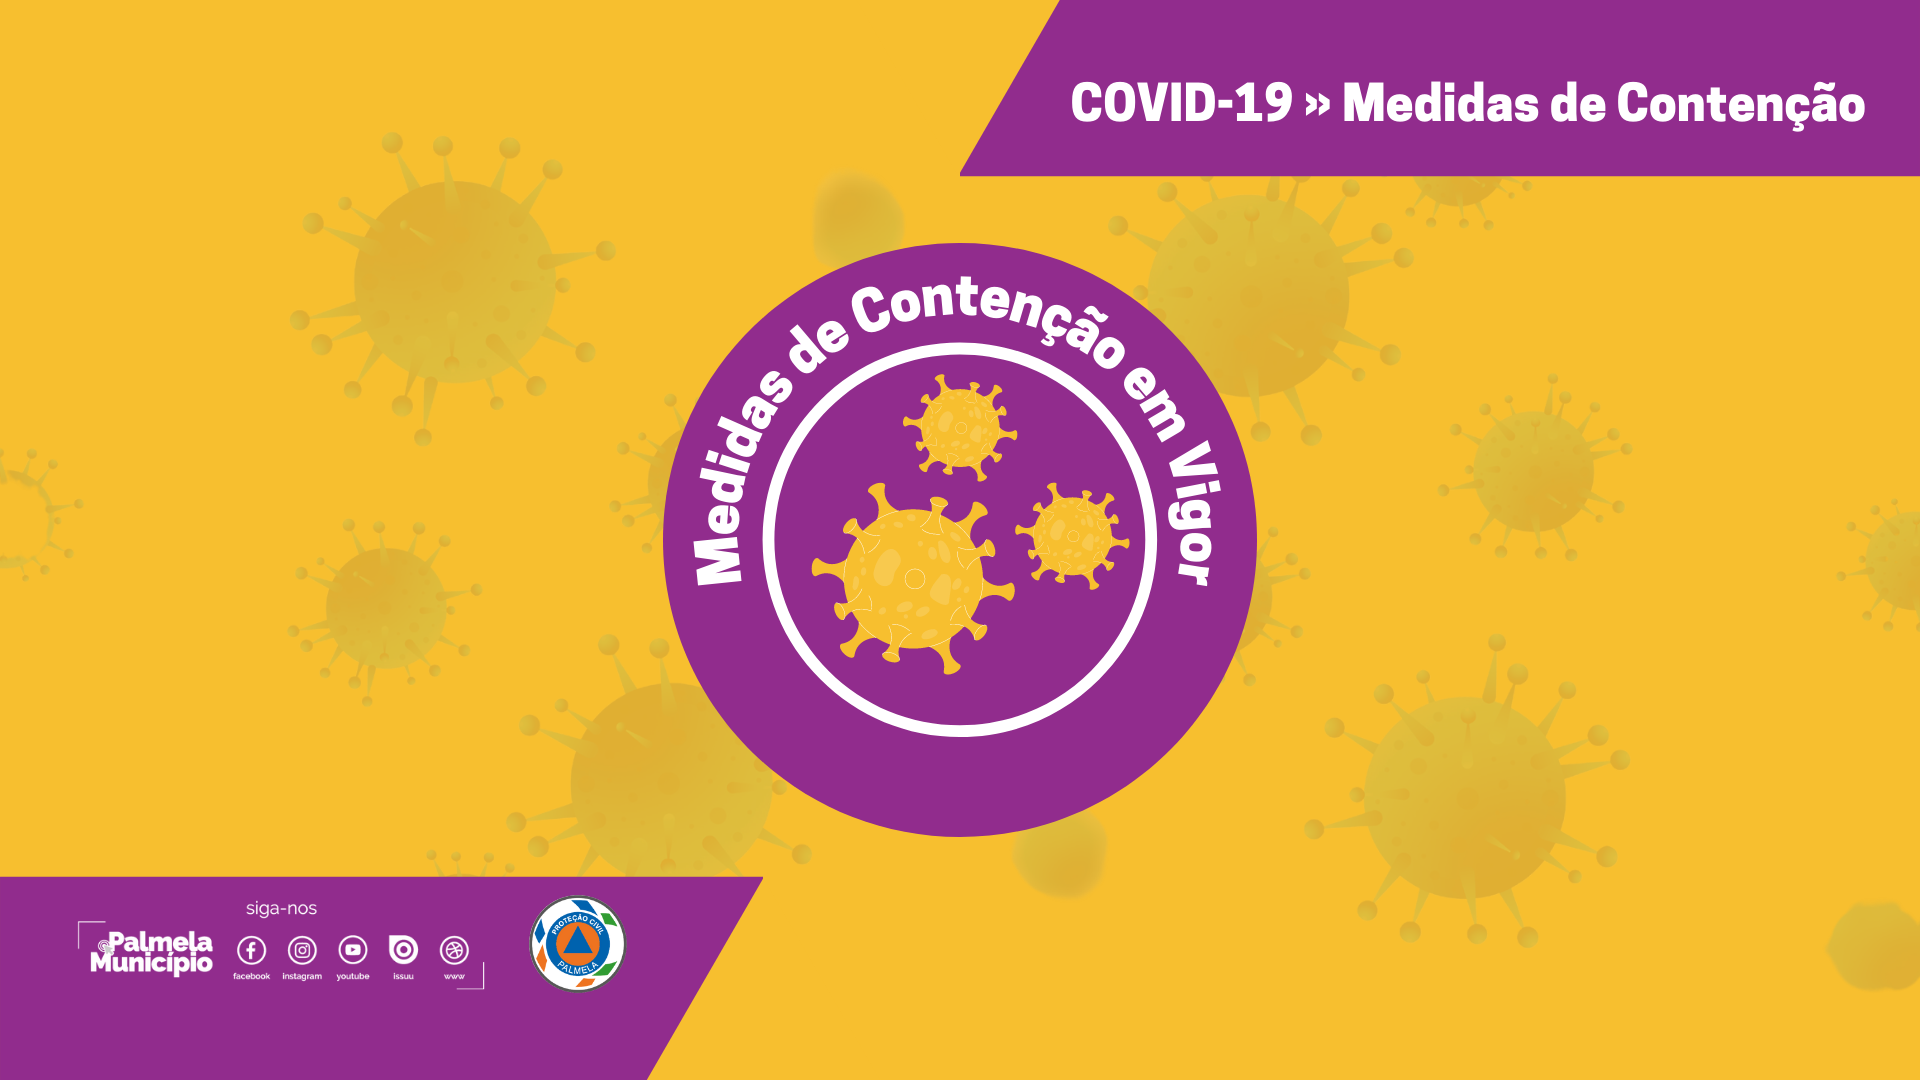 COVID-19: Medidas de Contenção